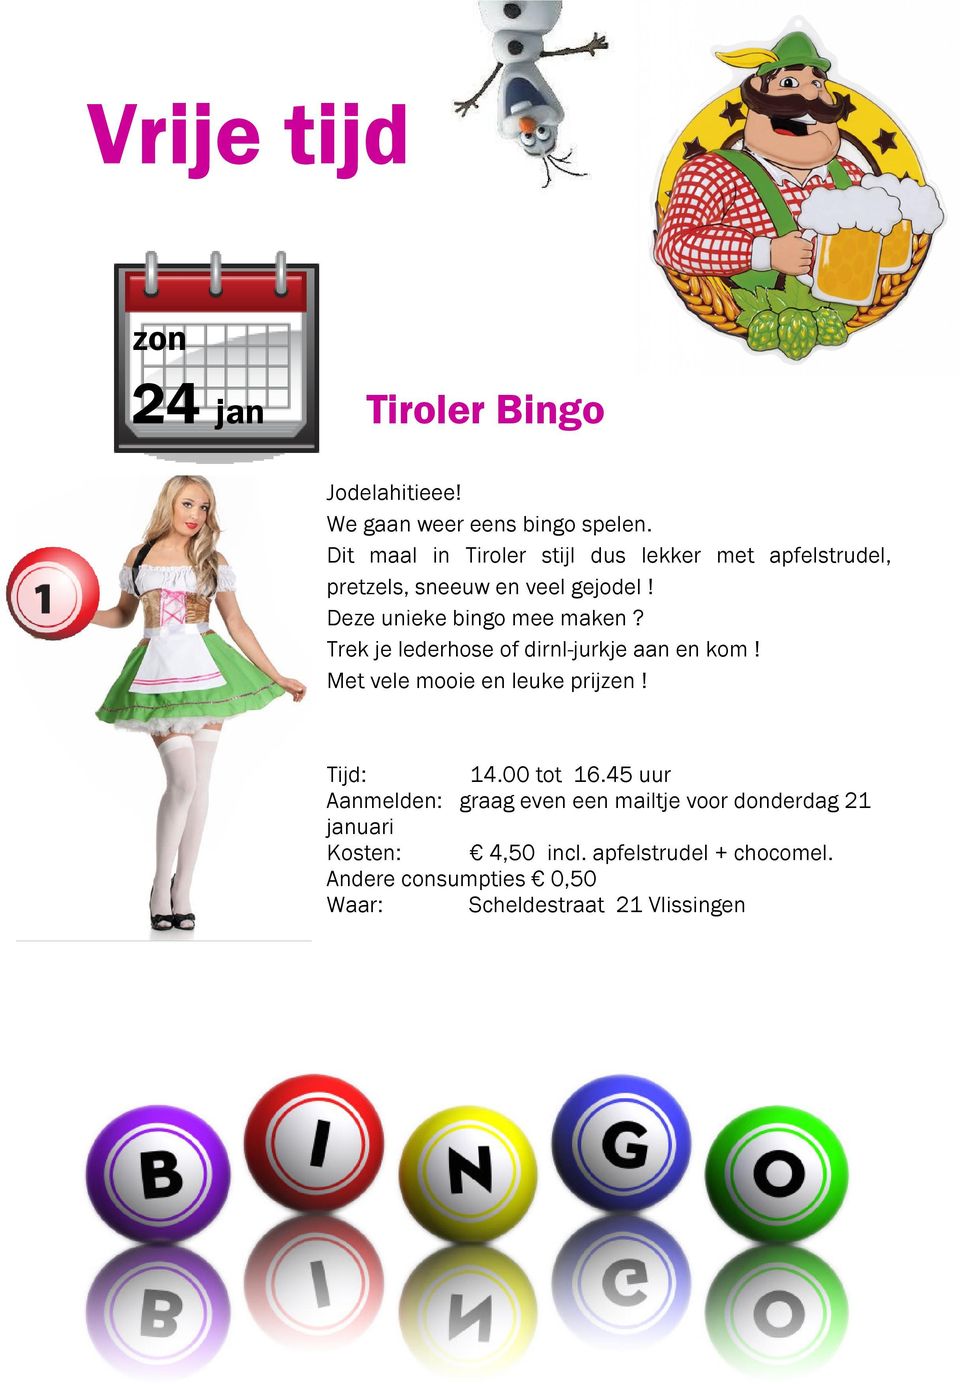 Deze unieke bingo mee maken? Trek je lederhose of dirnl-jurkje aan en kom! Met vele mooie en leuke prijzen!